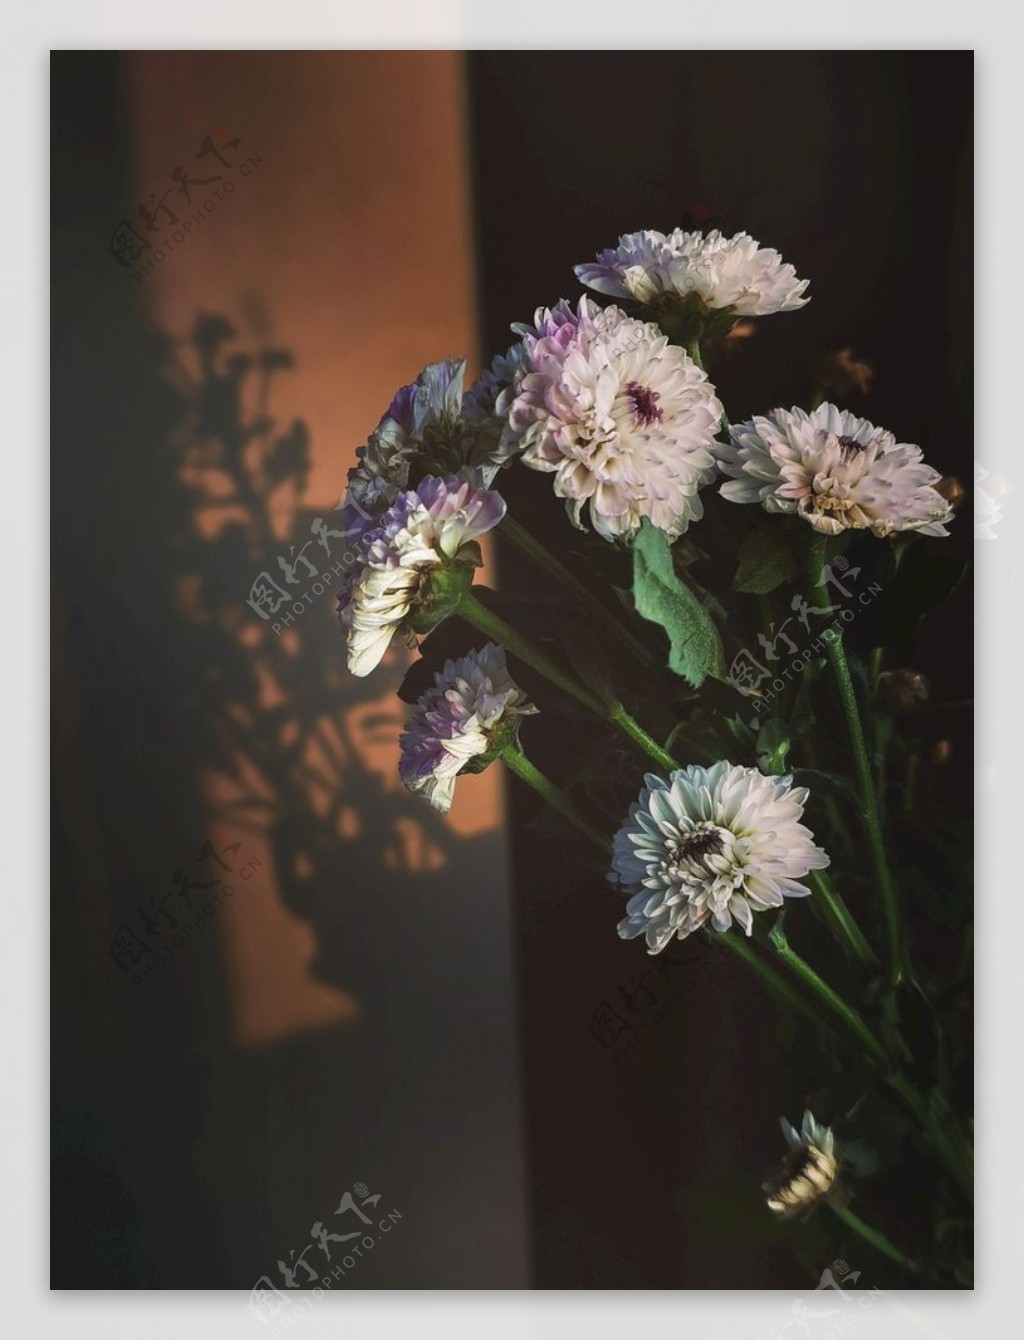 阳光下的野菊花图片